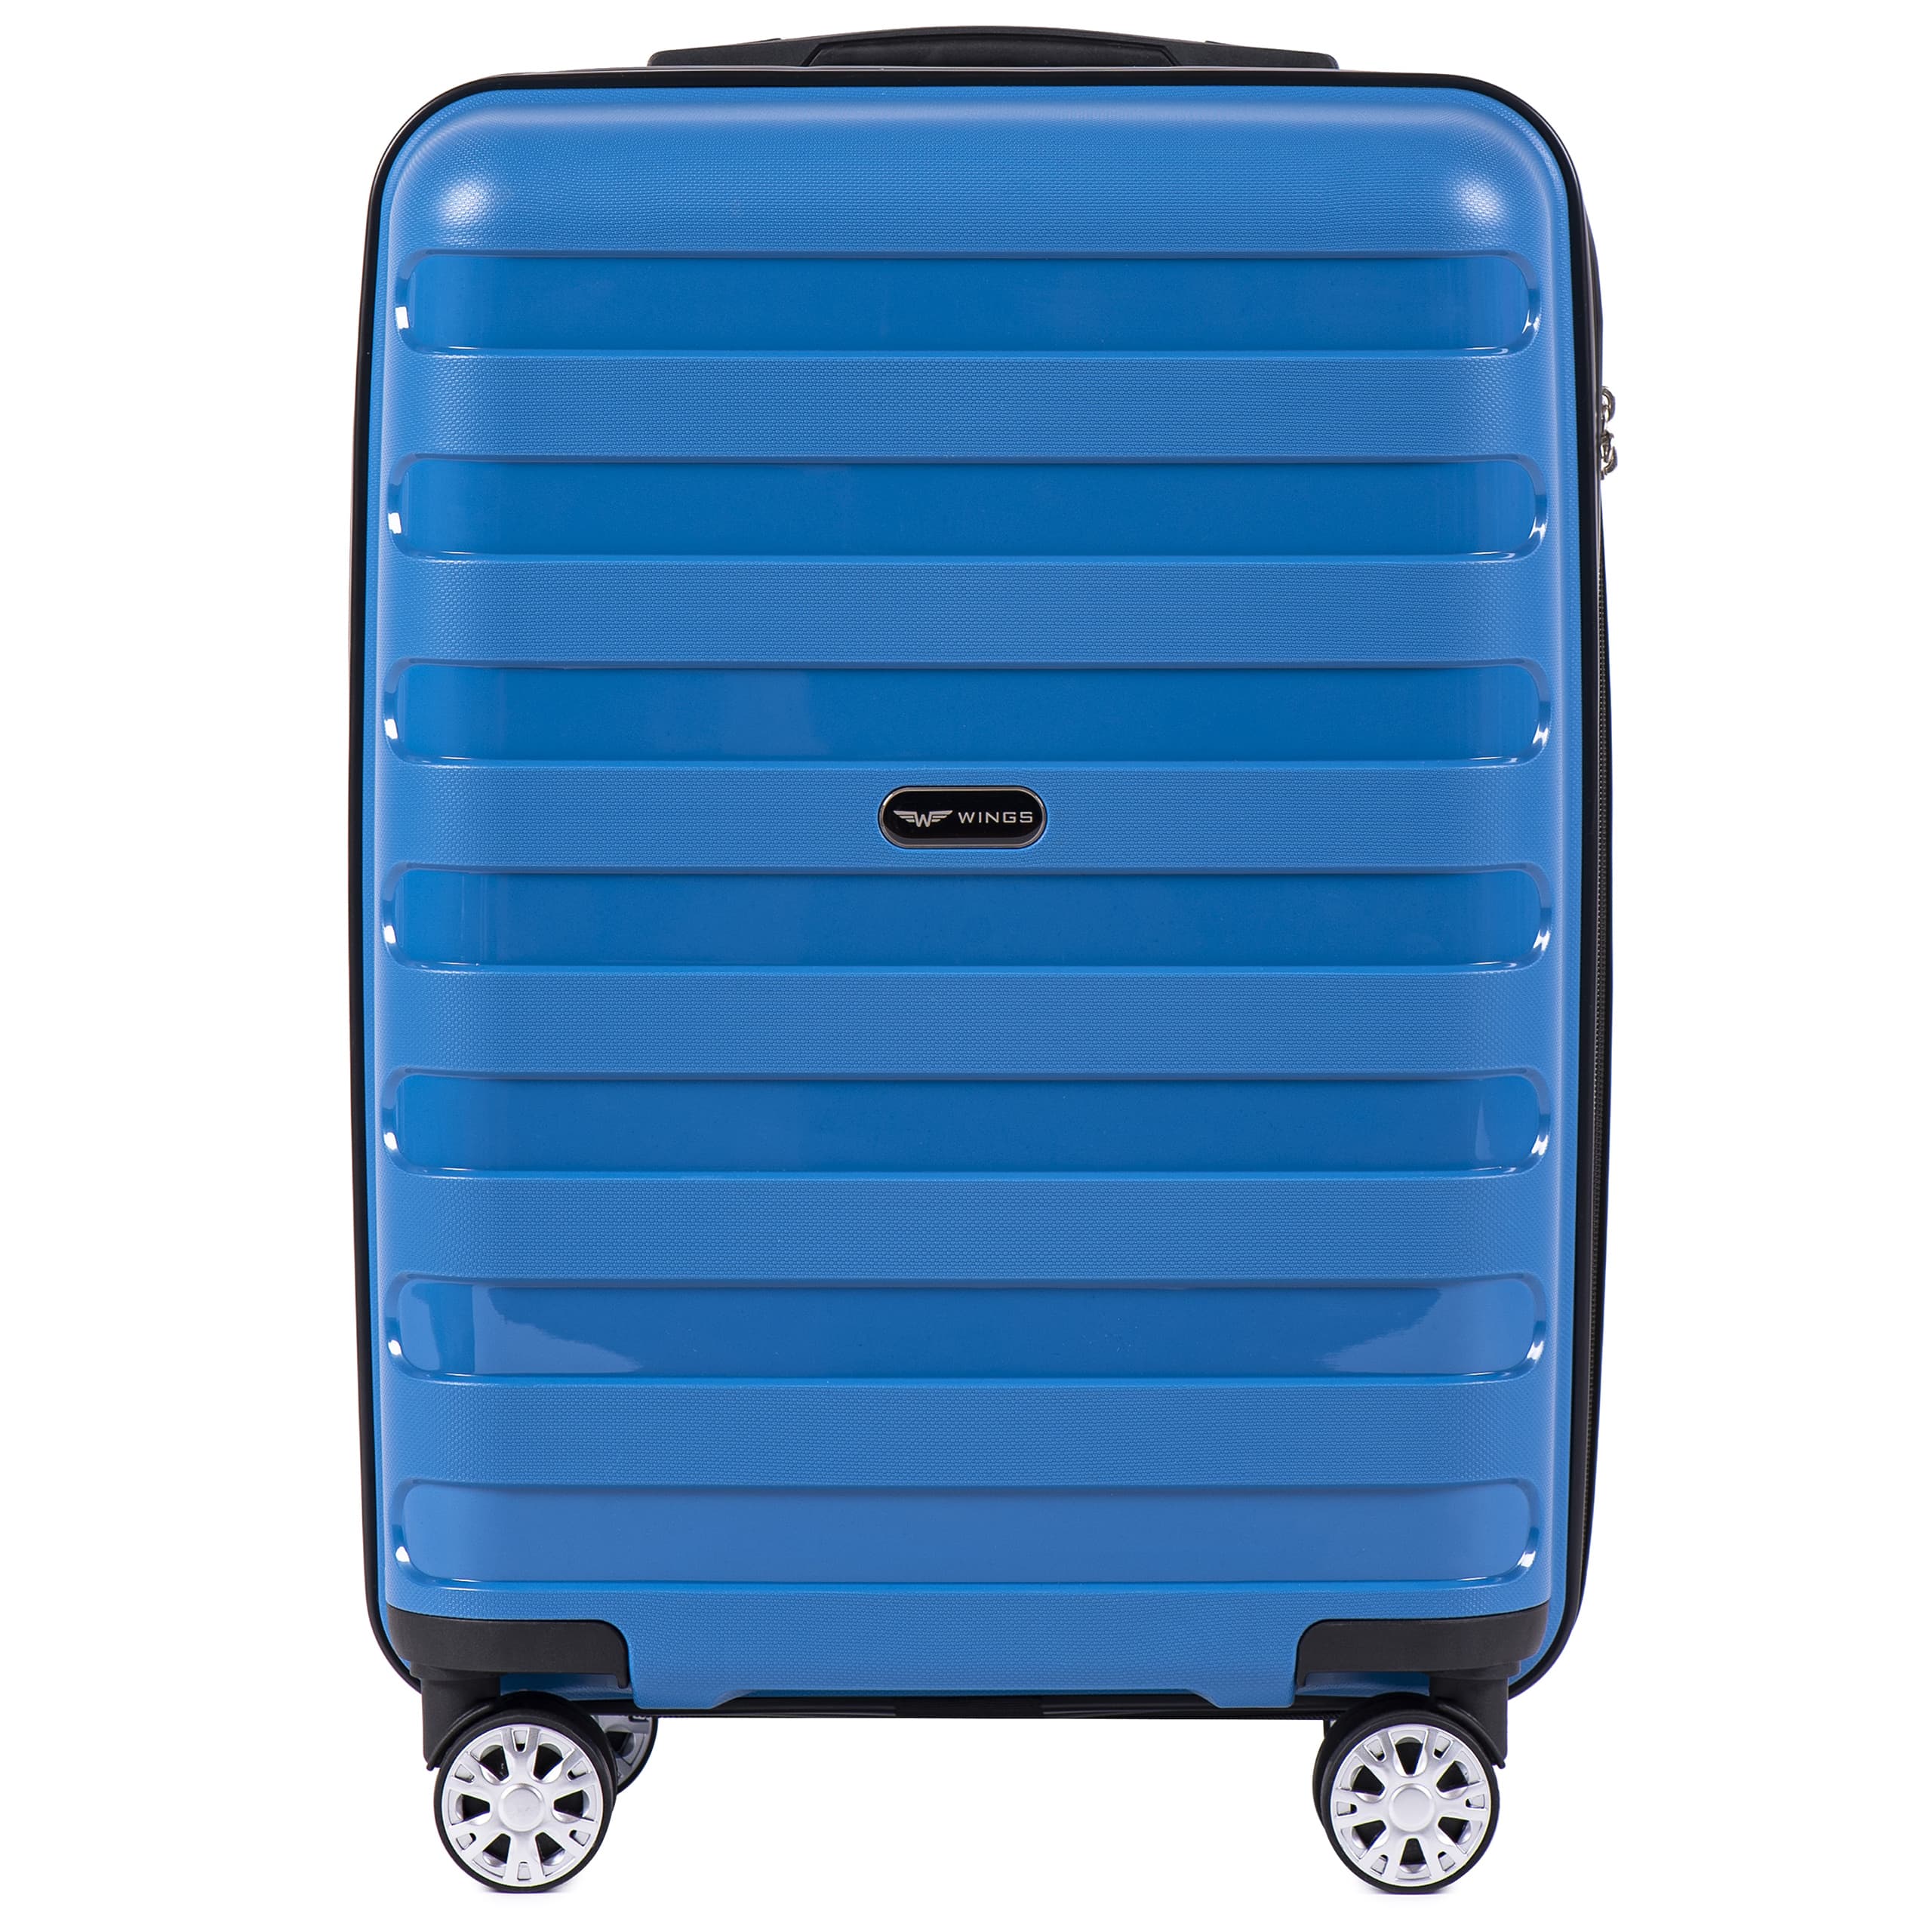 Маленький чемодан для ручной клади WINGS Prime S PP-07 BLUE! ДЛЯ 7-10 кг! - 1